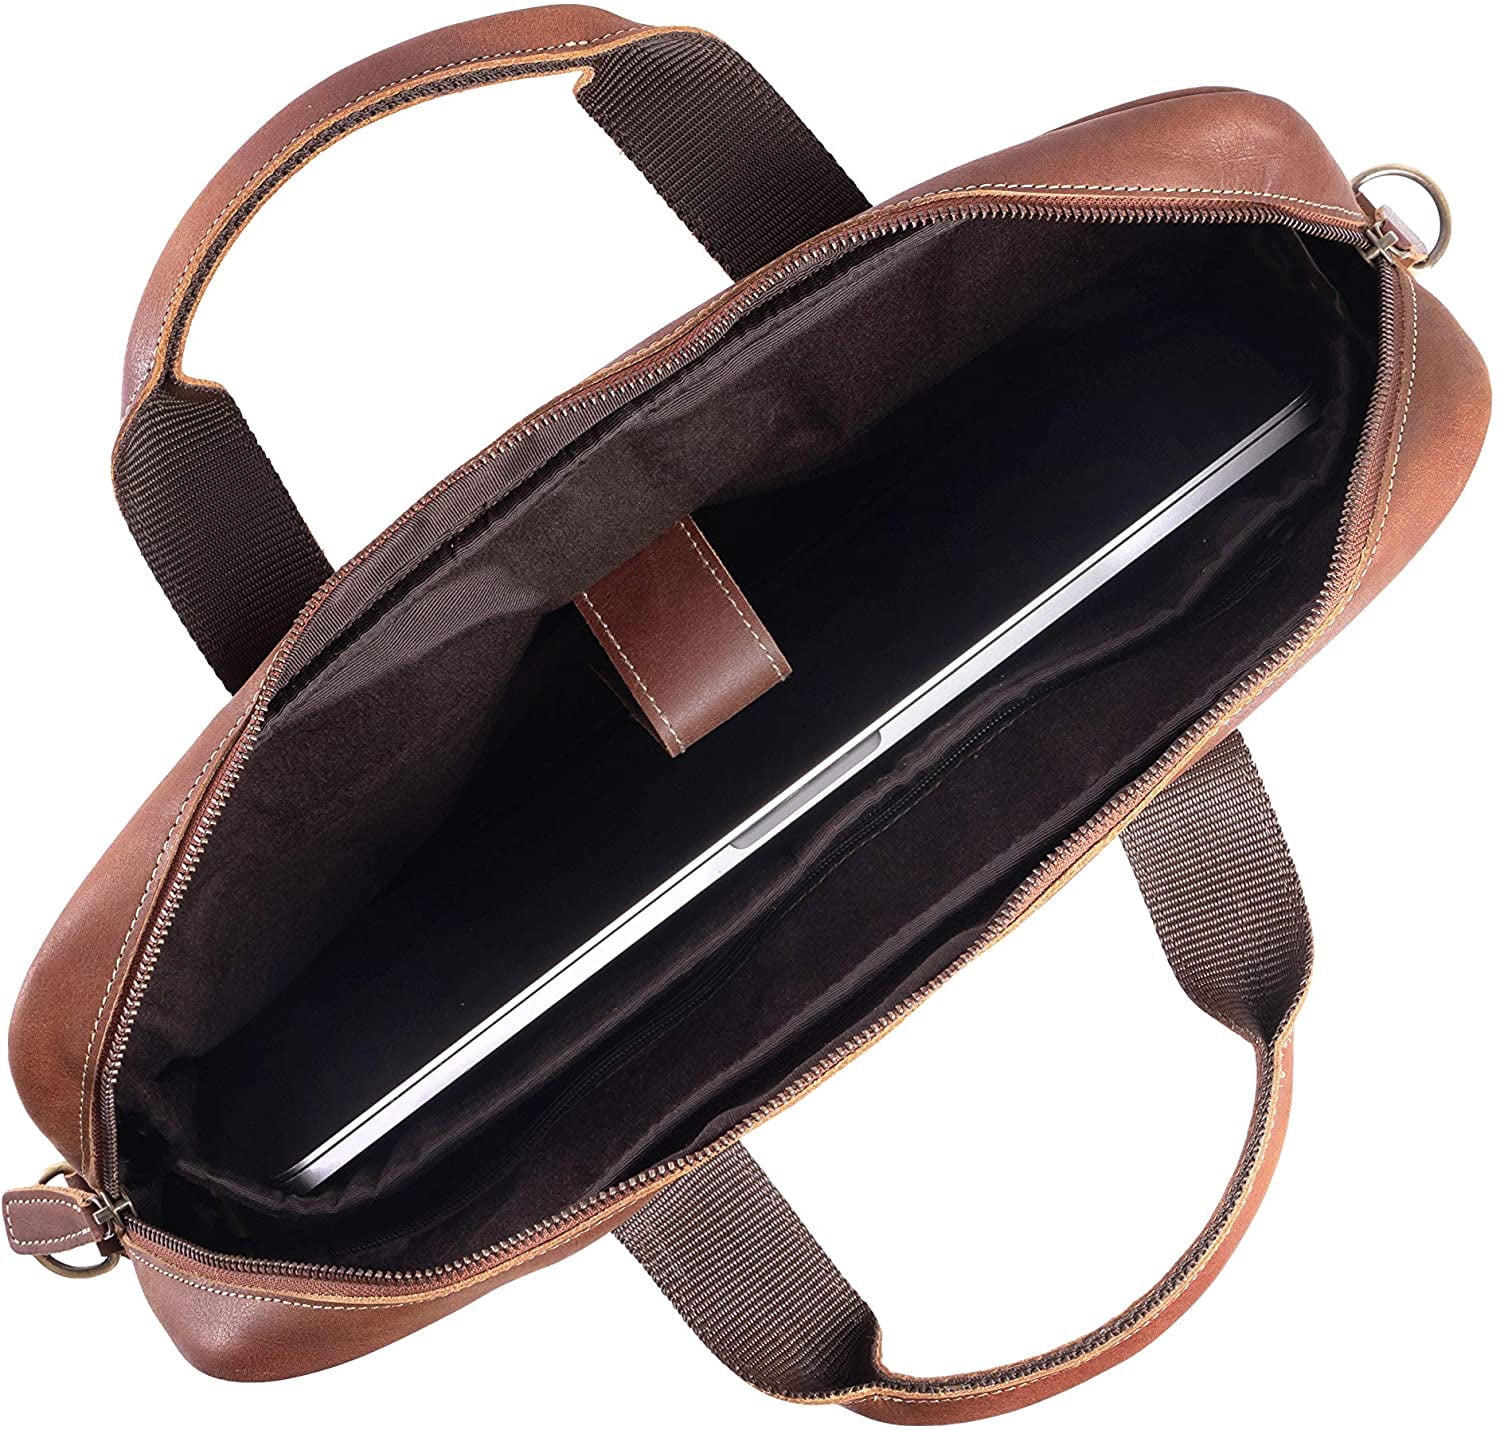 S-ZONE Men's Leather Briefcase 16 inch Laptop Bag Handbag Messenger Shoulder ... 